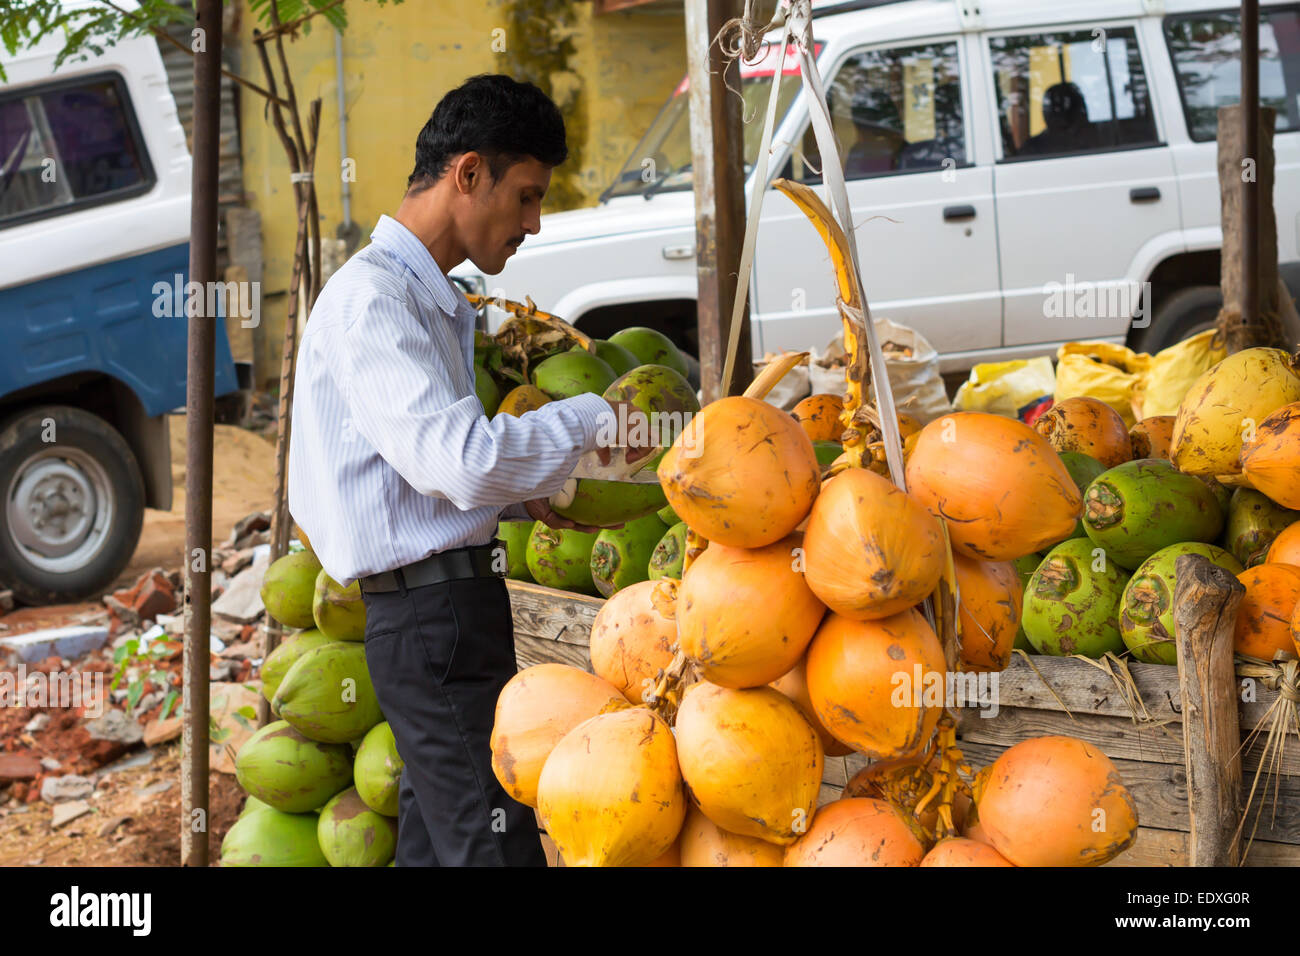 TRICHY, India - 15 febbraio: un uomo non identificato si erge nei pressi di noci di cocco. India, nello Stato del Tamil Nadu, nei pressi di Trichy. Febbraio 15, 2013 Foto Stock